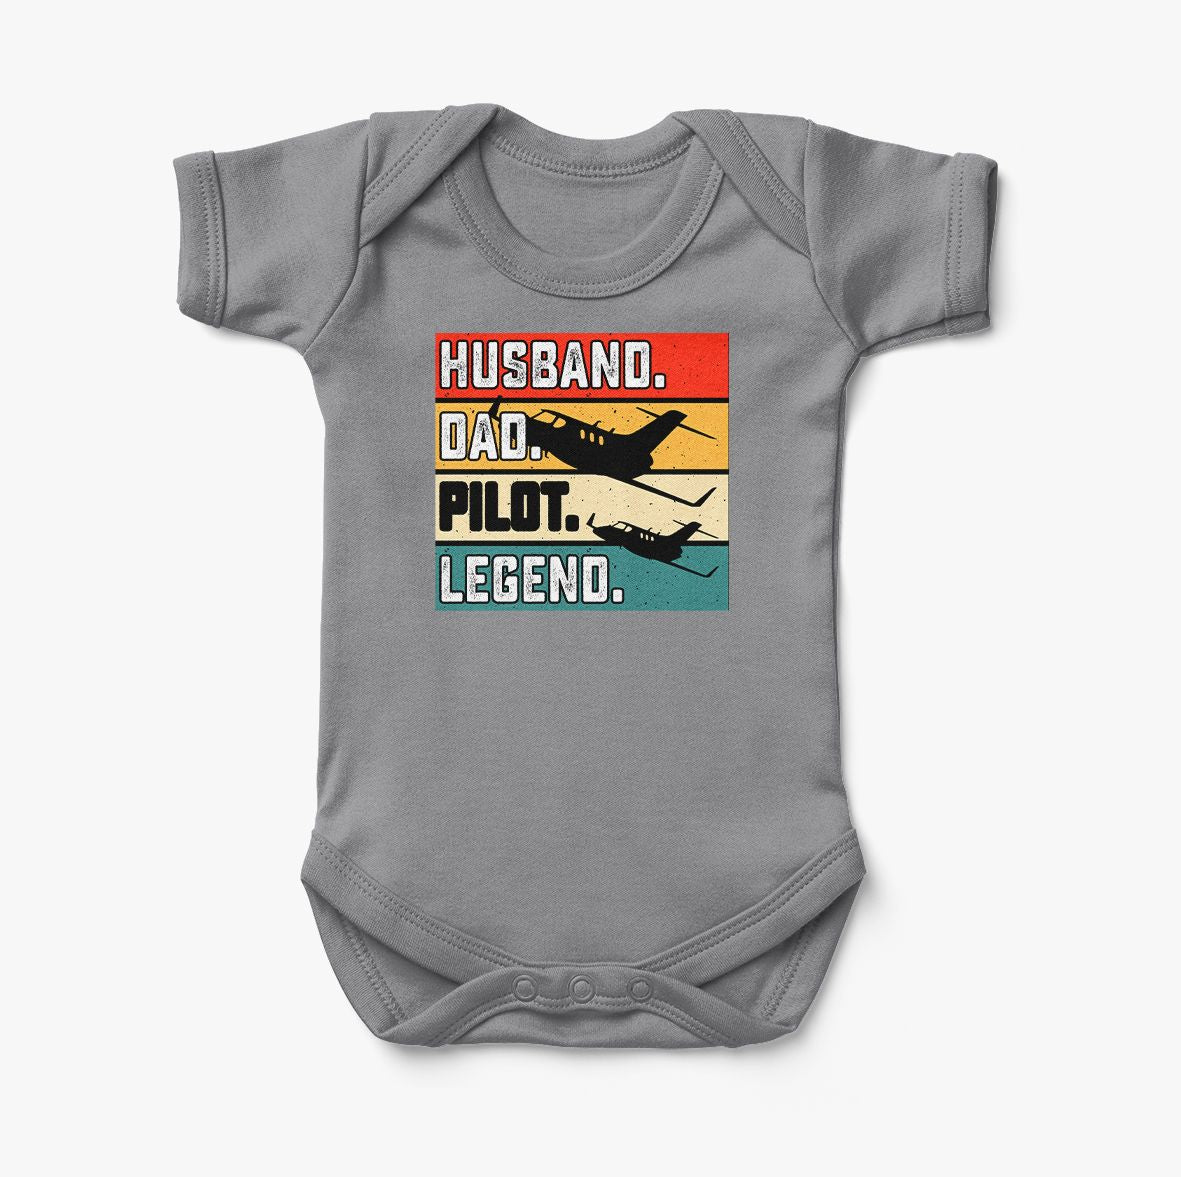 Husband & Dad & Pilot & Legend Designed Baby Bodysuits